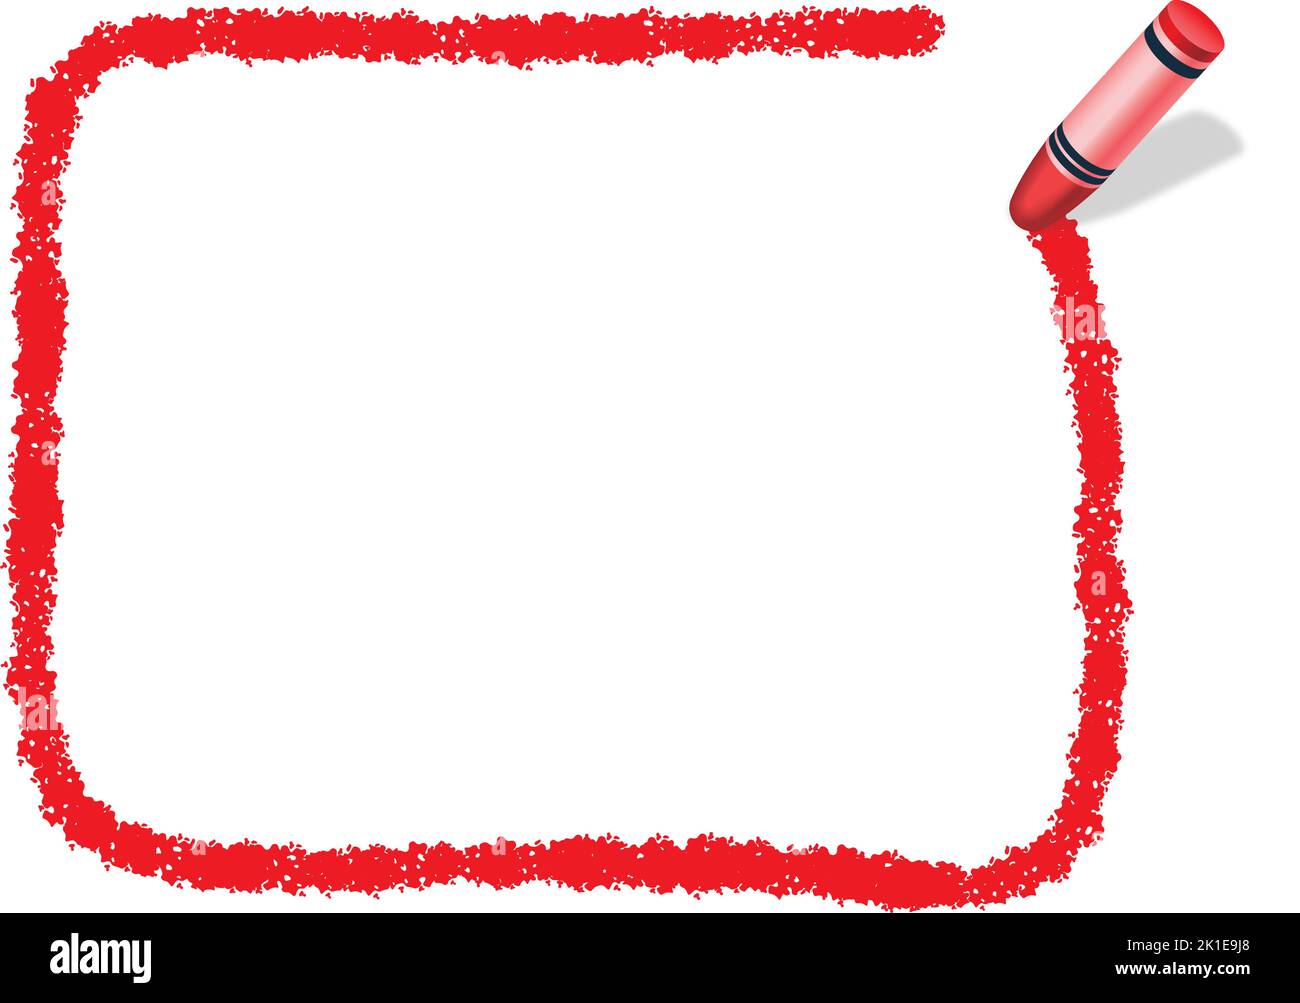 Vecteur tracé à la main Rouge Rectangle cadre de texture de crayon isolé sur Un fond blanc. Illustration de Vecteur